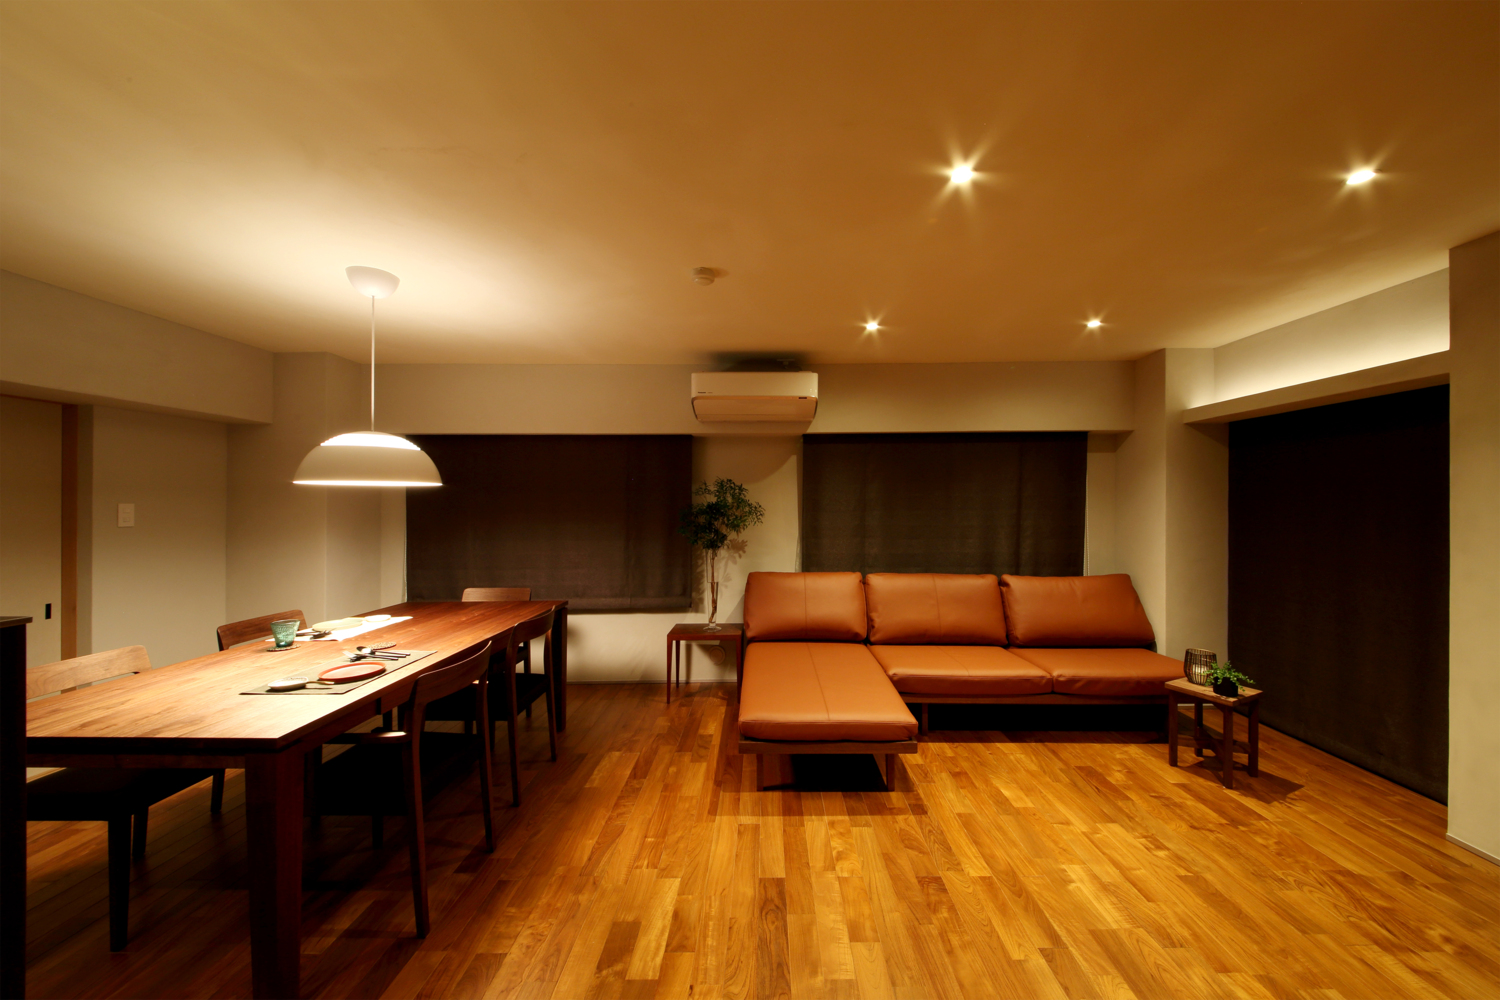 自然光を取り入れ、家具とLINKするリノベーション